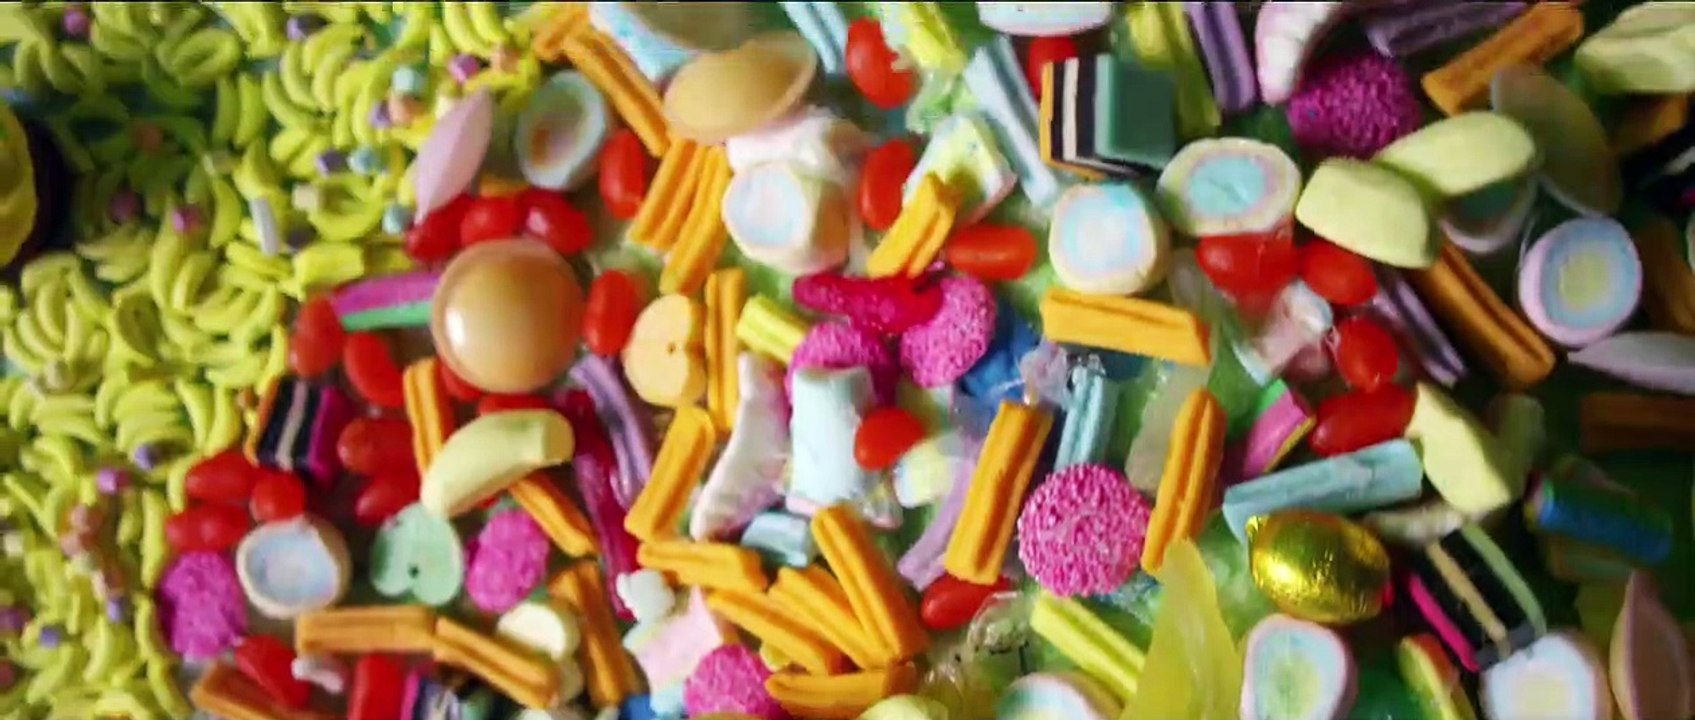 Voll verzuckert - That Sugar Film | movie | 2015 | Official Trailer